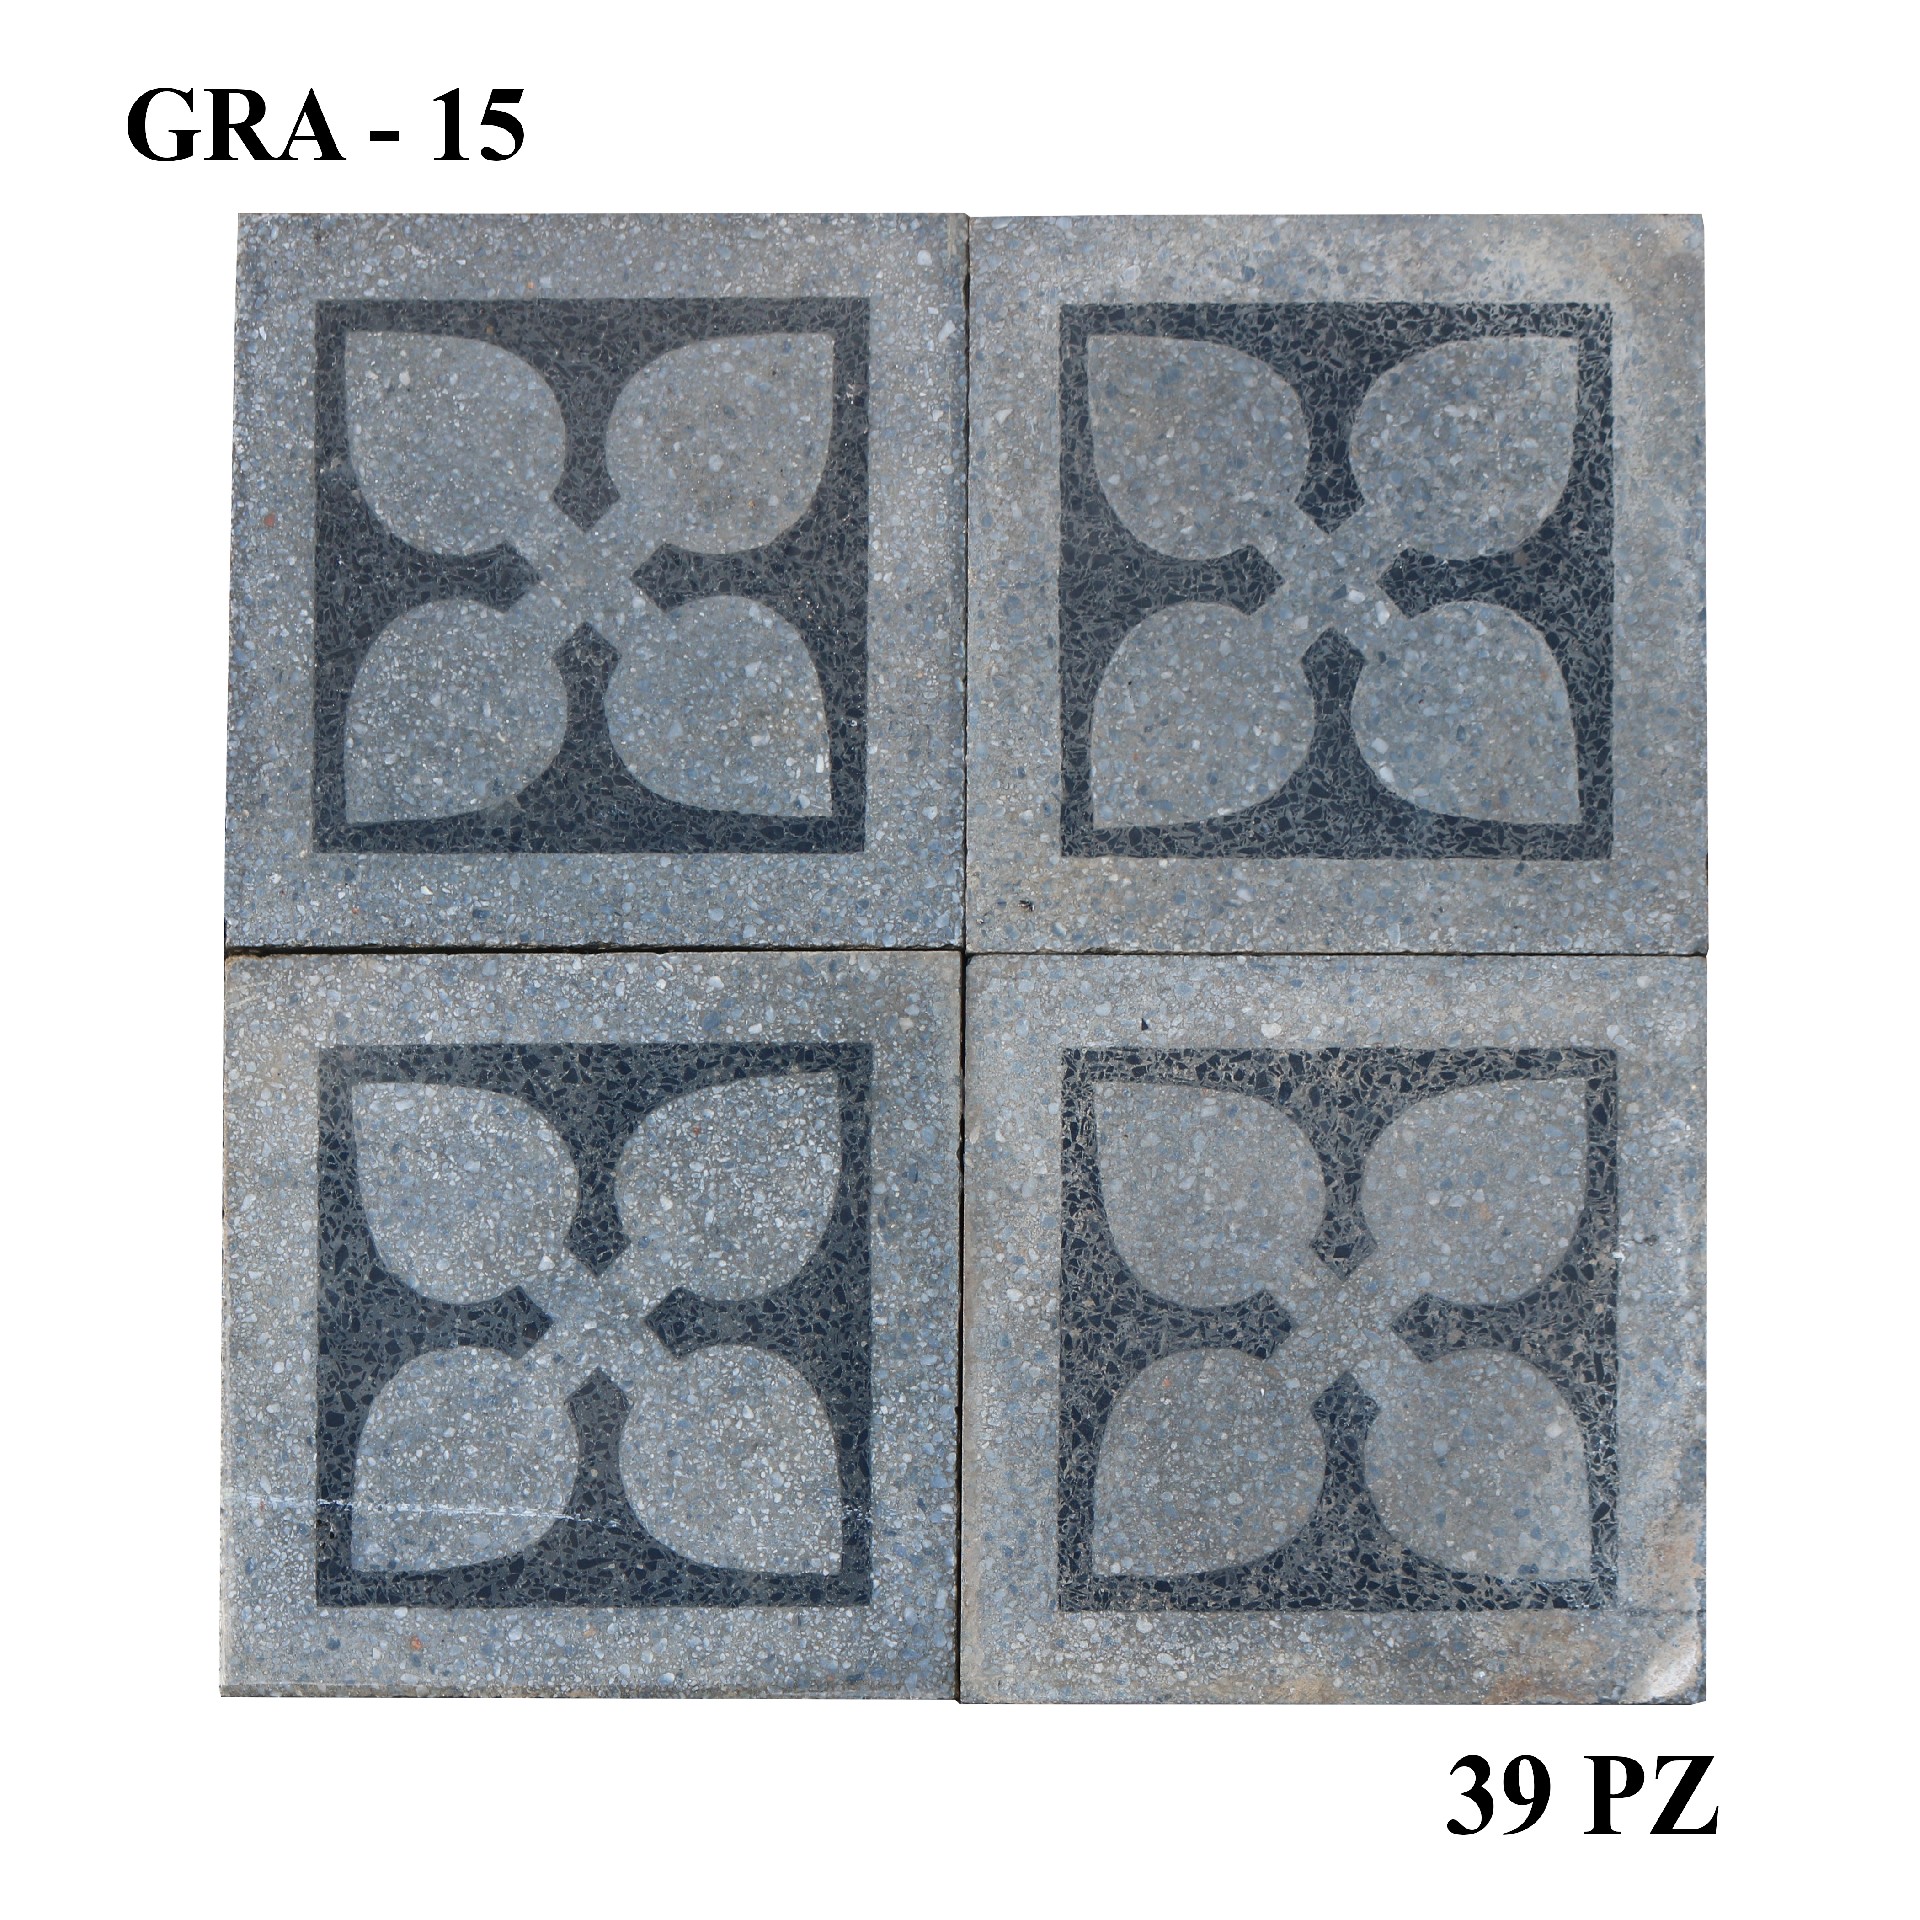 Antica pavimentazione in graniglia cm20x20.  - Cementine e Graniglie - Pavimentazioni Antiche - Prodotti - Antichità Fiorillo